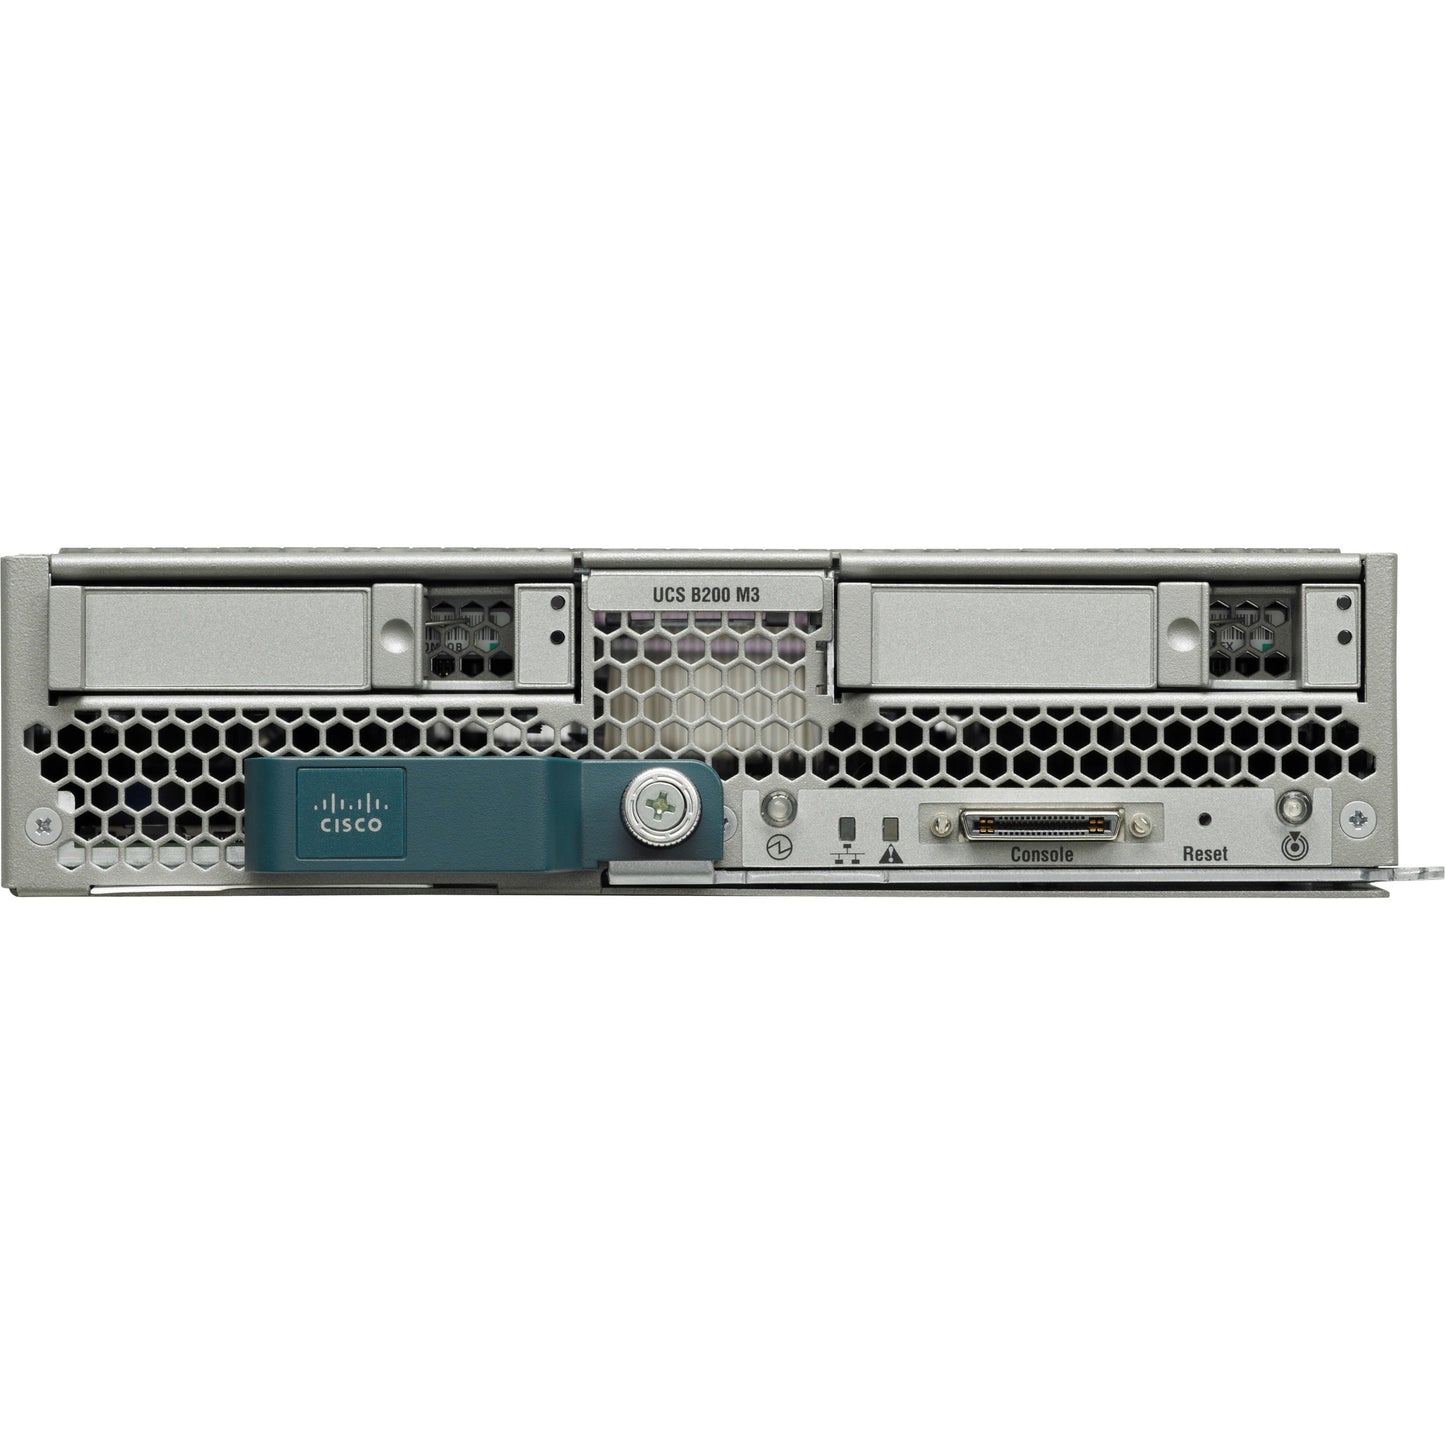 Cisco B200 M3 Blade Server - 2 x Intel Xeon E5-2609 v2 2.50 GHz - 64 GB RAM - Serial Attached SCSI (SAS) Serial ATA Controller